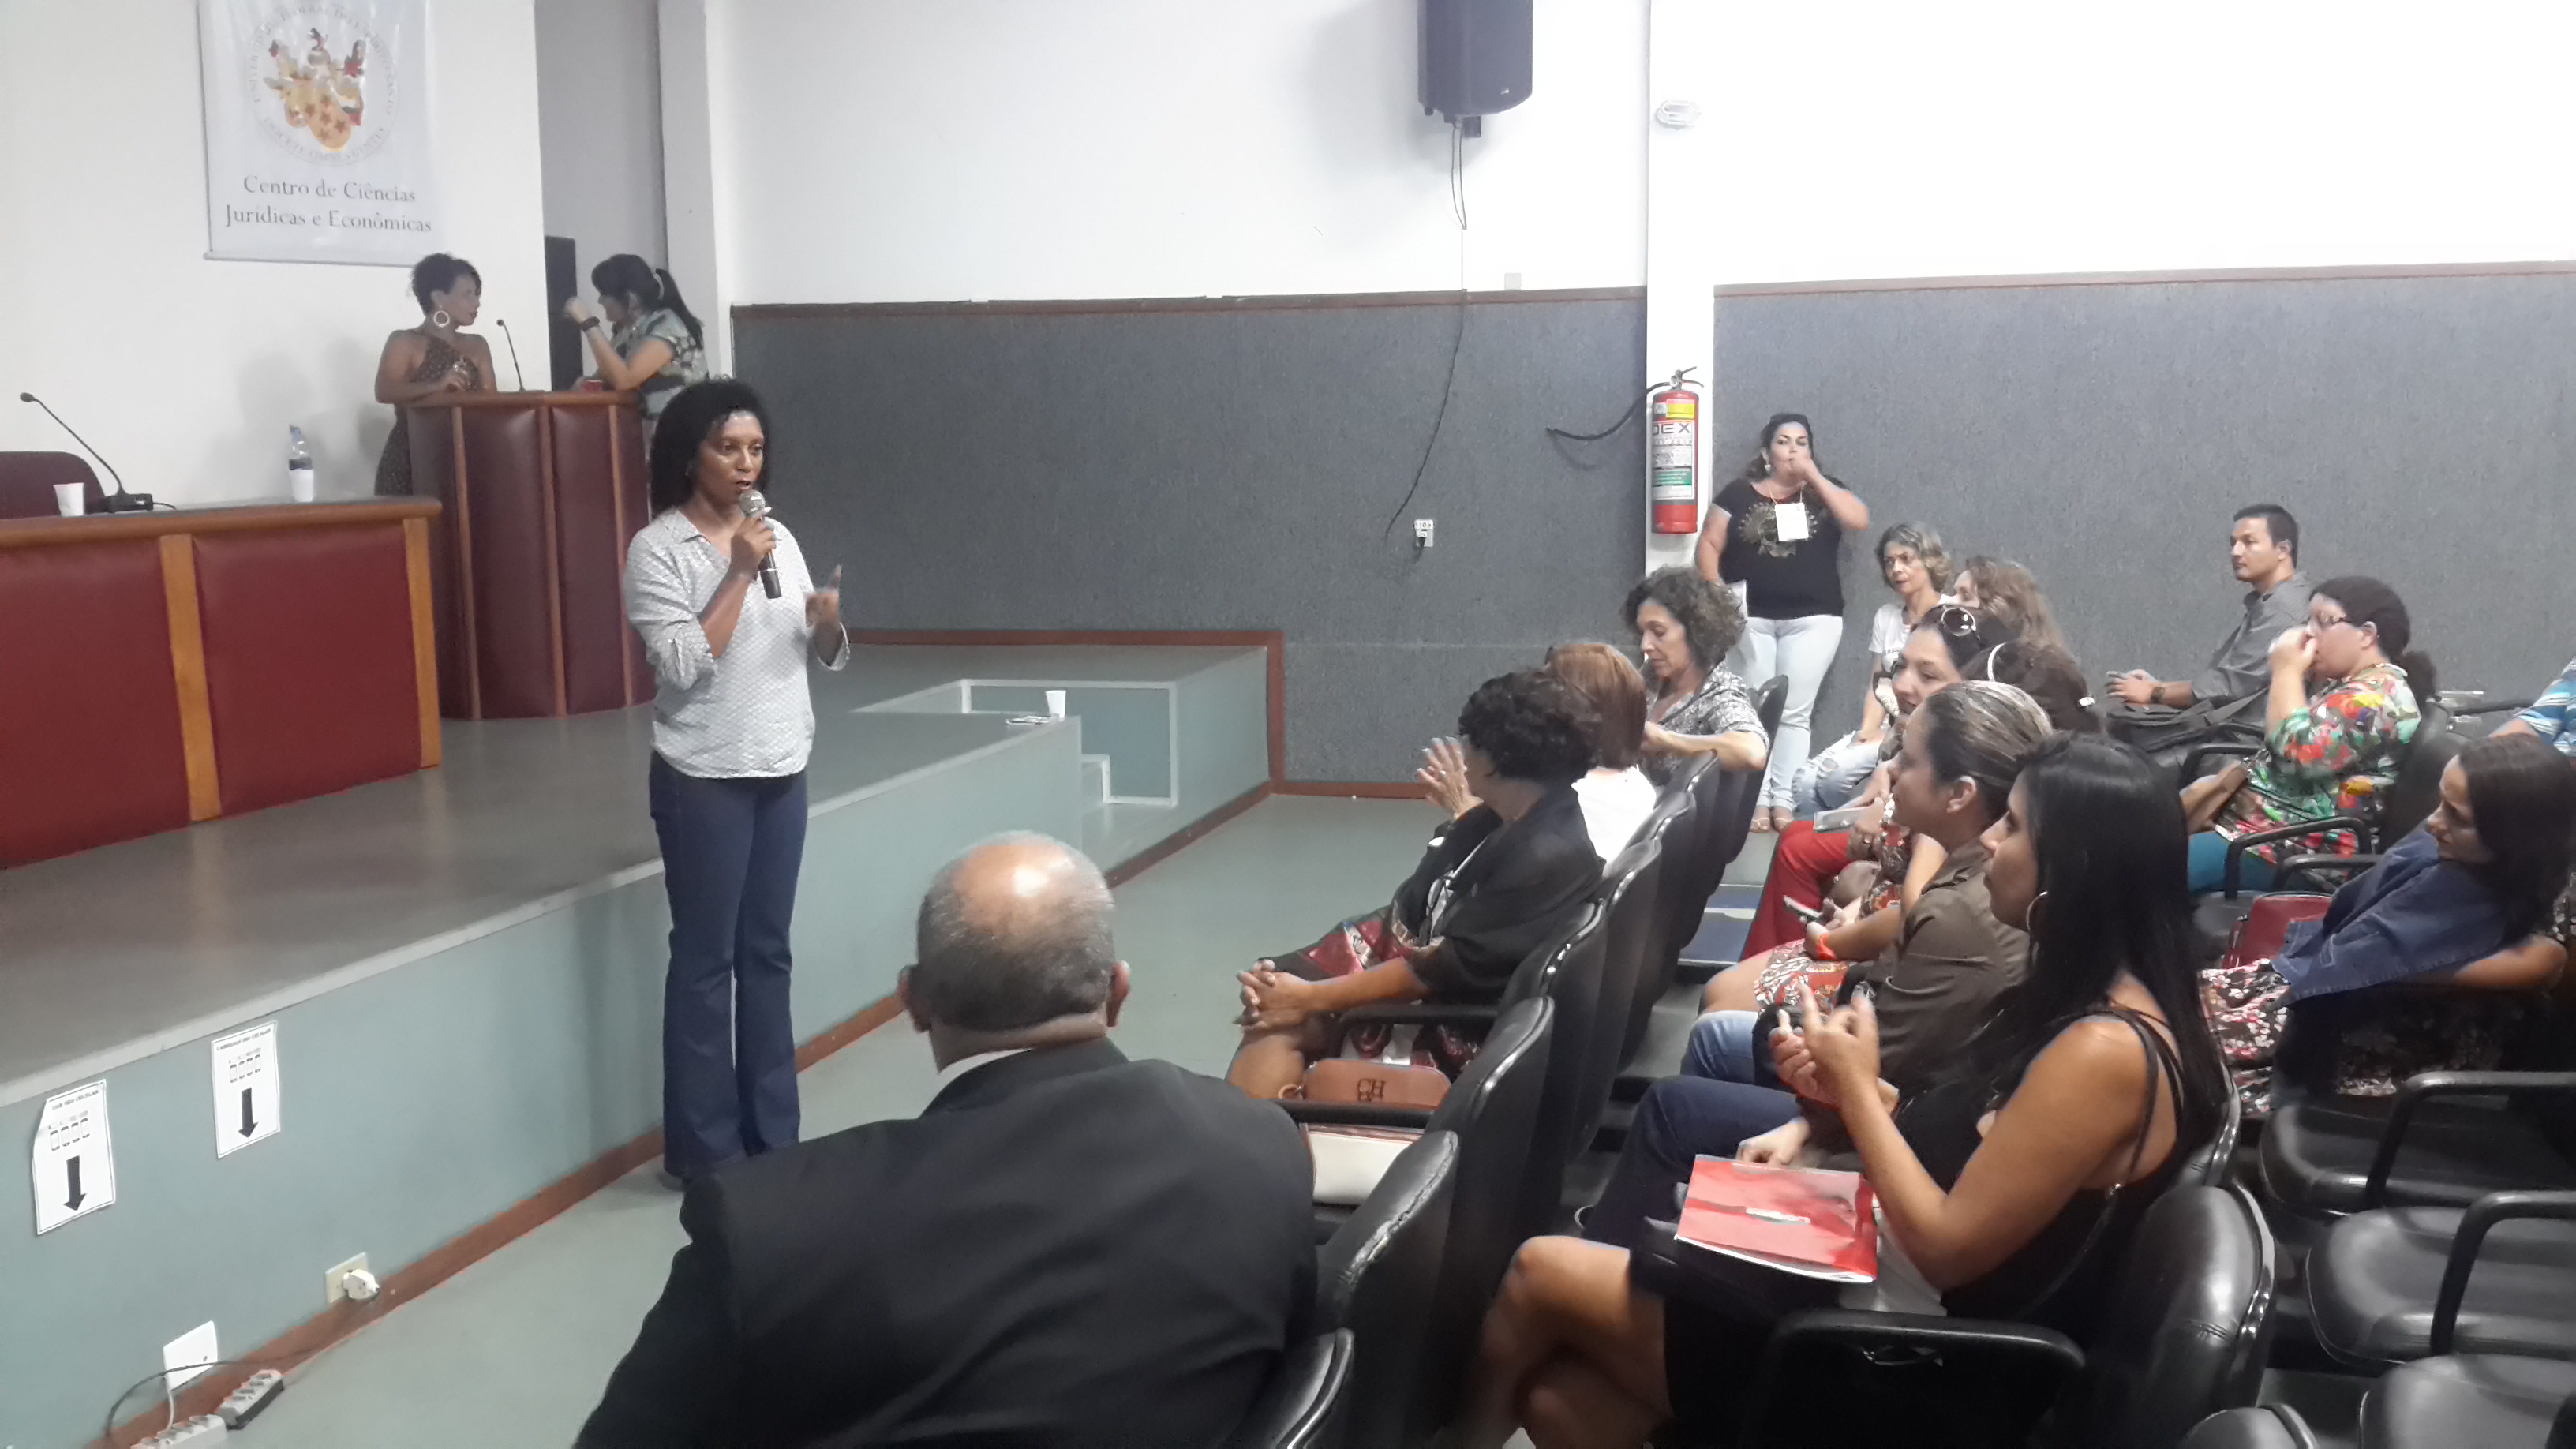 Sindier Antônia ministrou a palestra “Biblioteca Escolar: Além de inovar e empreender, implementar a agenda 2030”